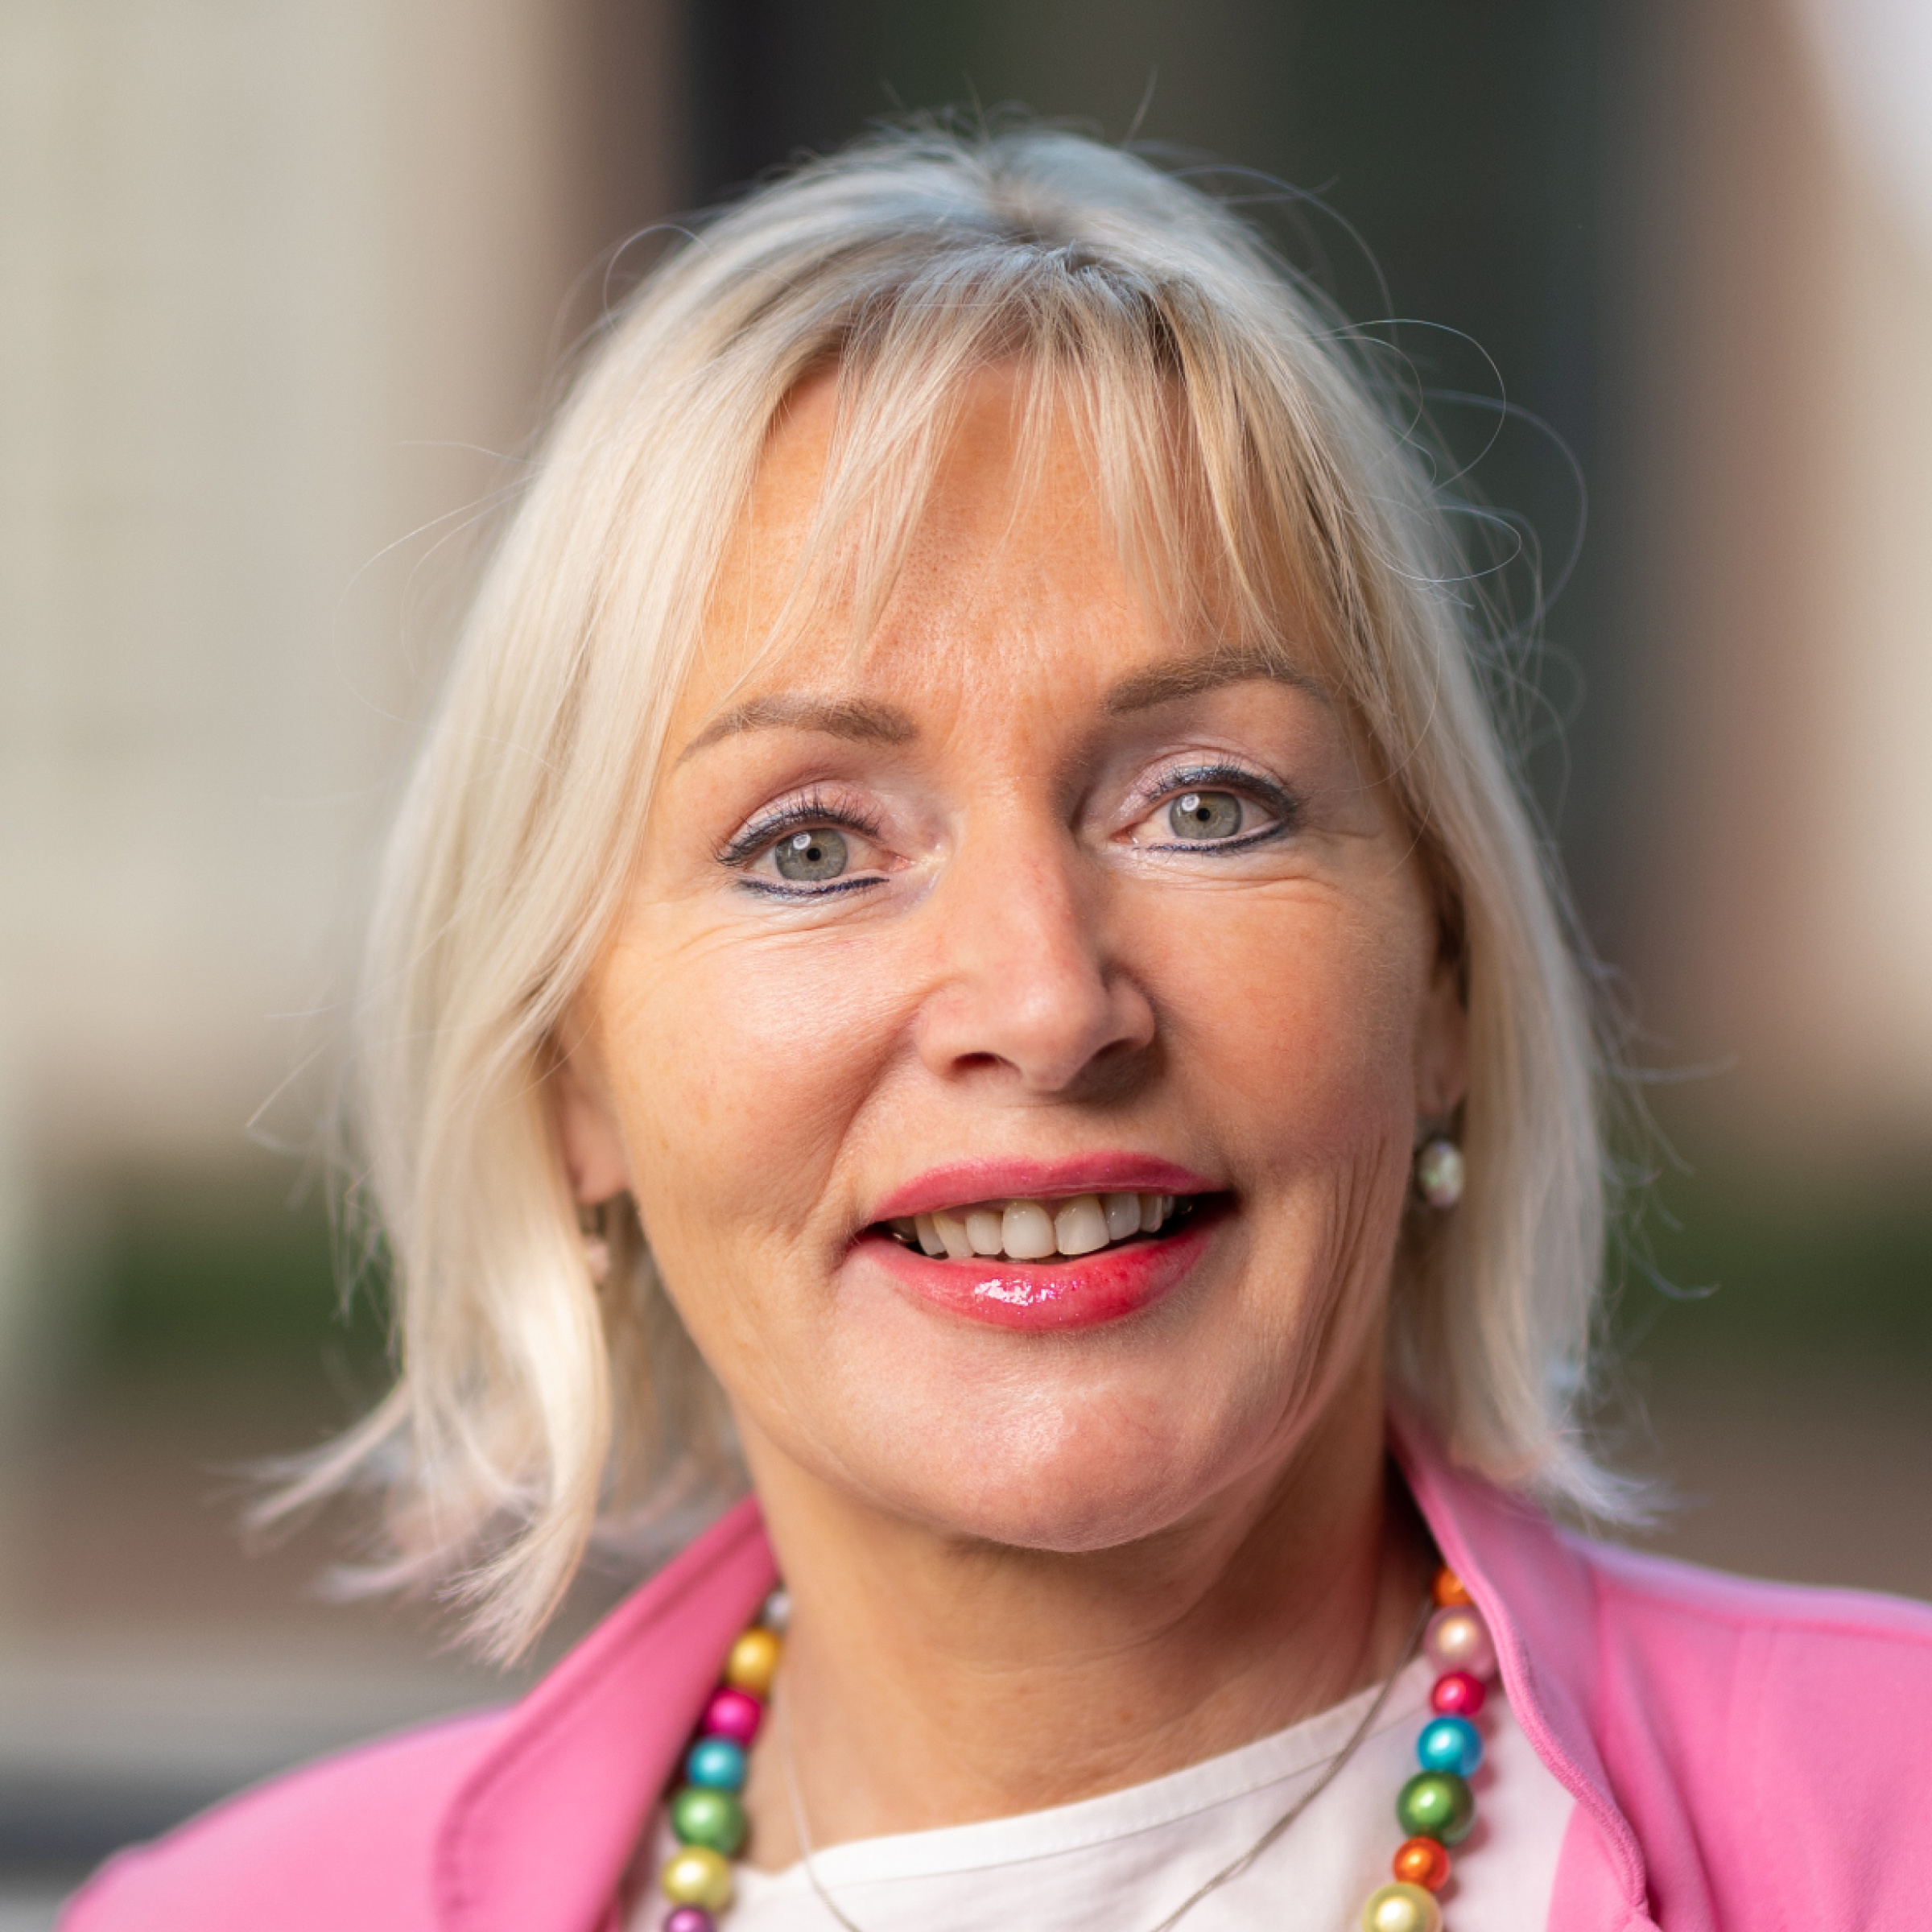 Kristina Sinemus - Hessische Ministerin für Digitale Strategie und Entwicklung